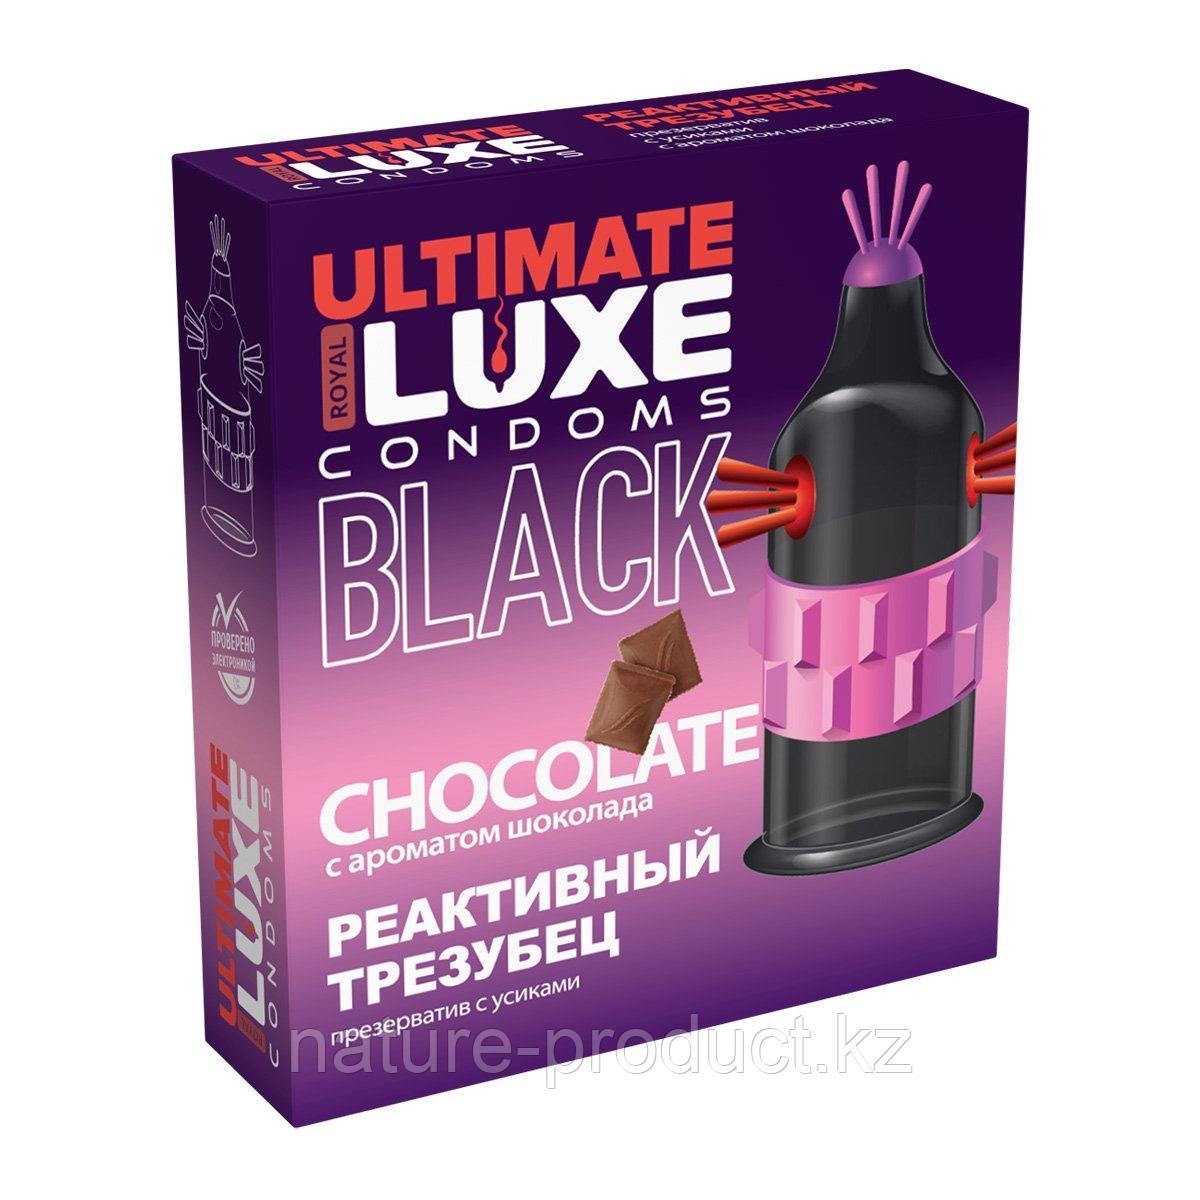 Презерватив LUXE BLACK ULTIMATE Реактивный трезубец (ШОКОЛАД) 1 шт.